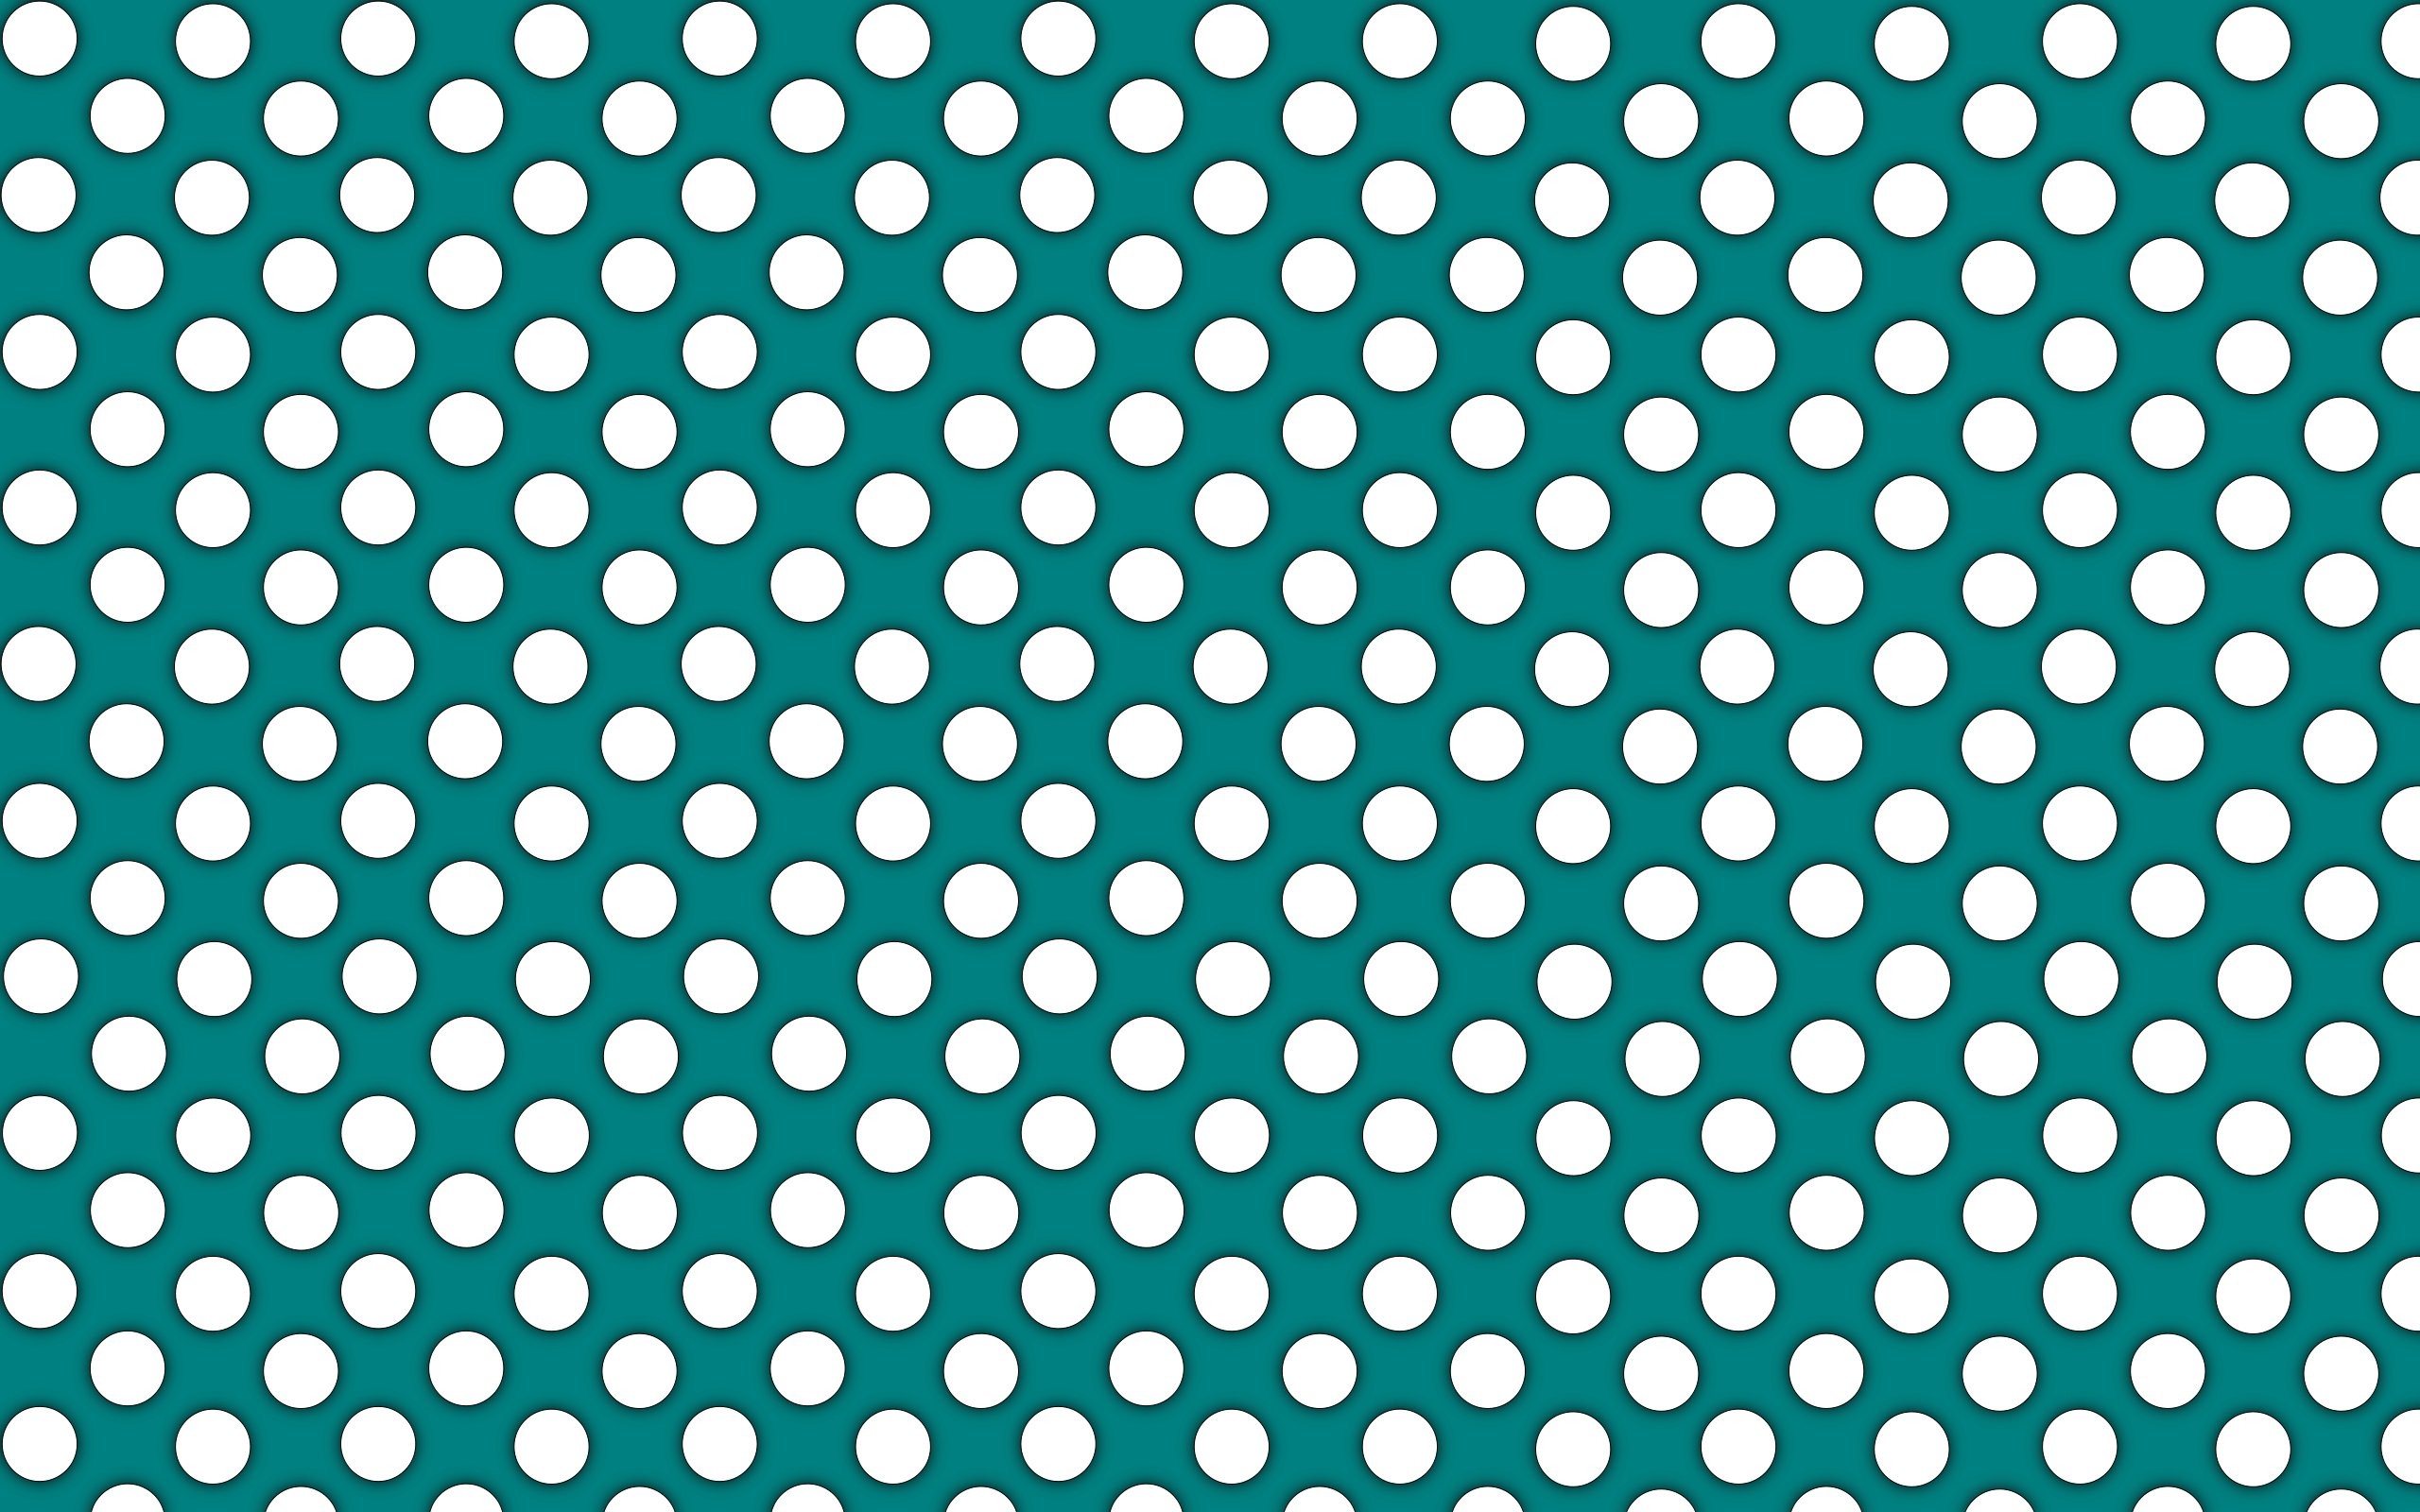 2560x1600 Polka Dot Wallpaper